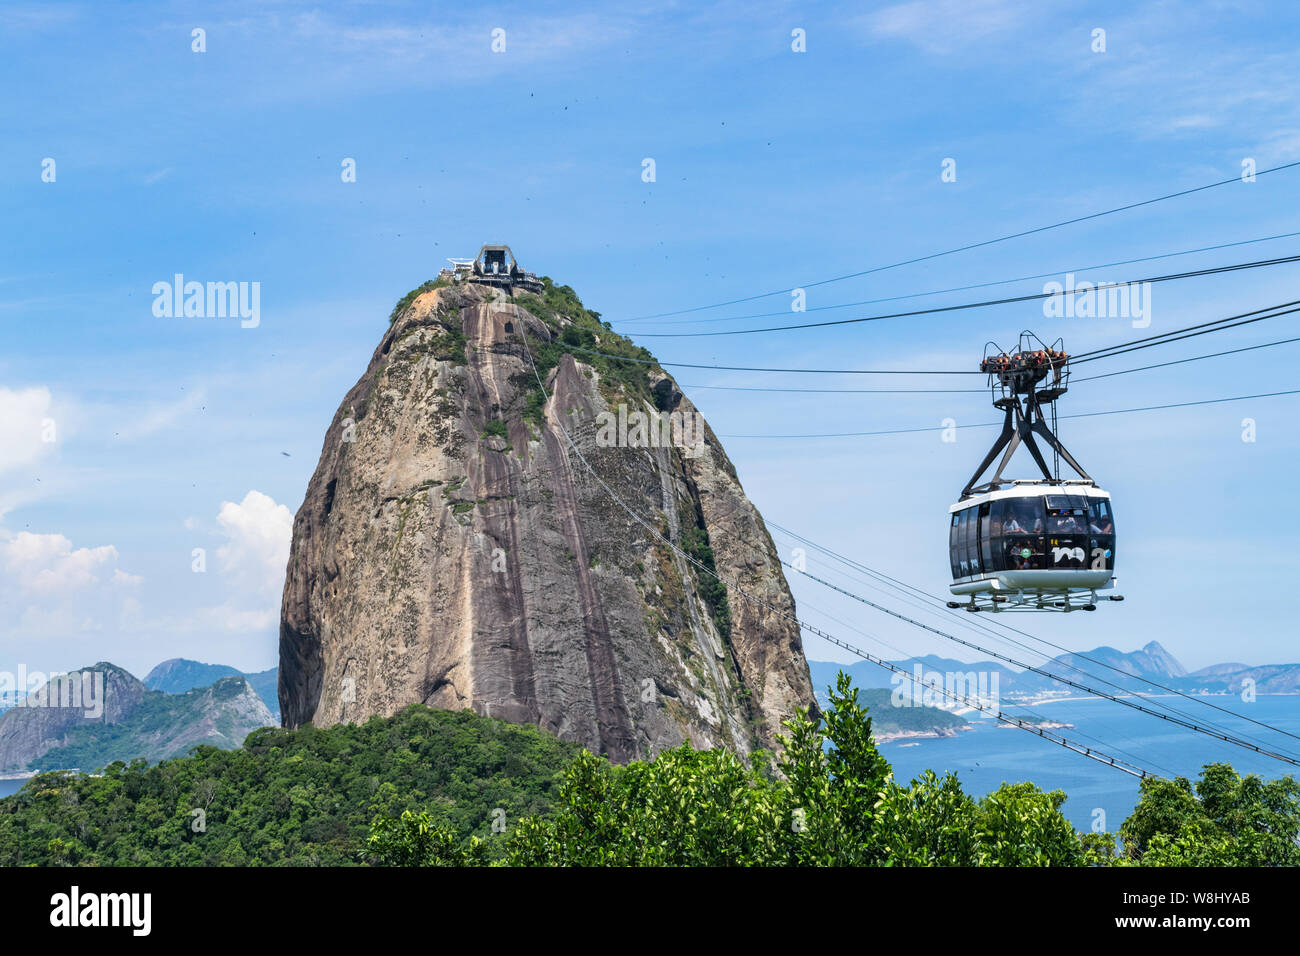 Vue d'un téléphérique au coucher du soleil, montrant plusieurs plages et sites touristiques à Rio de Janeiro Banque D'Images